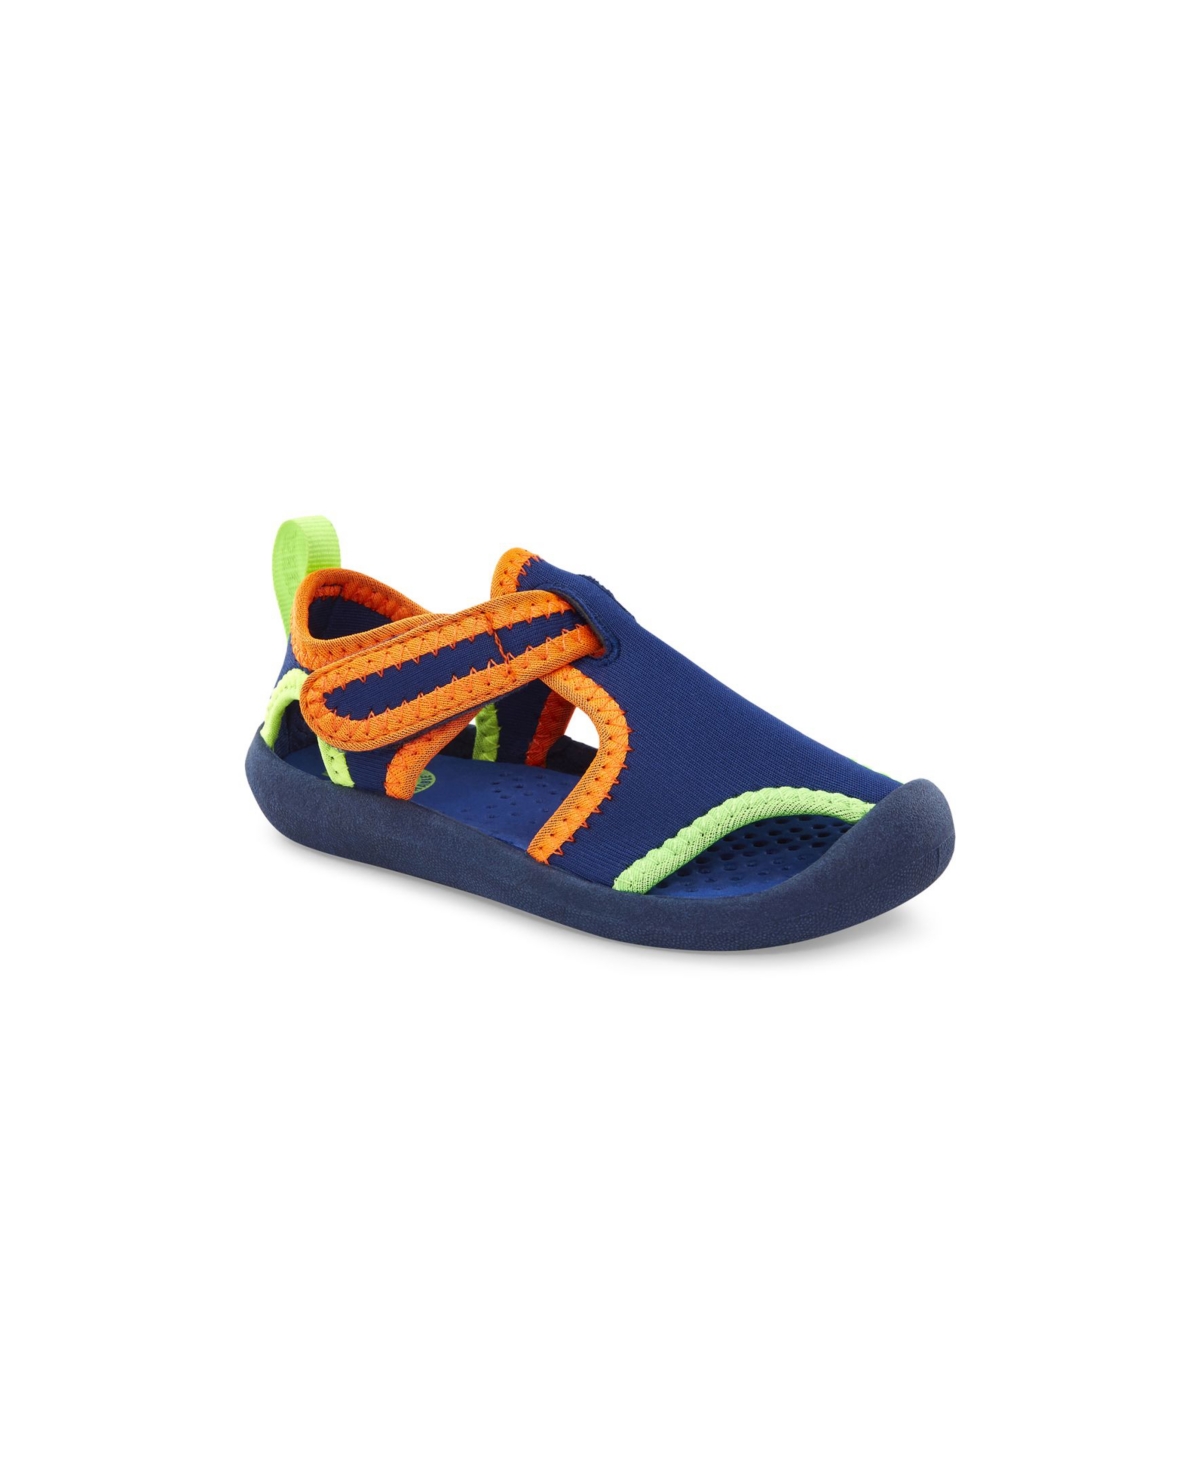 Shop Oshkosh B'gosh Toddler Boys Aquatic Shoes In Navy,neon